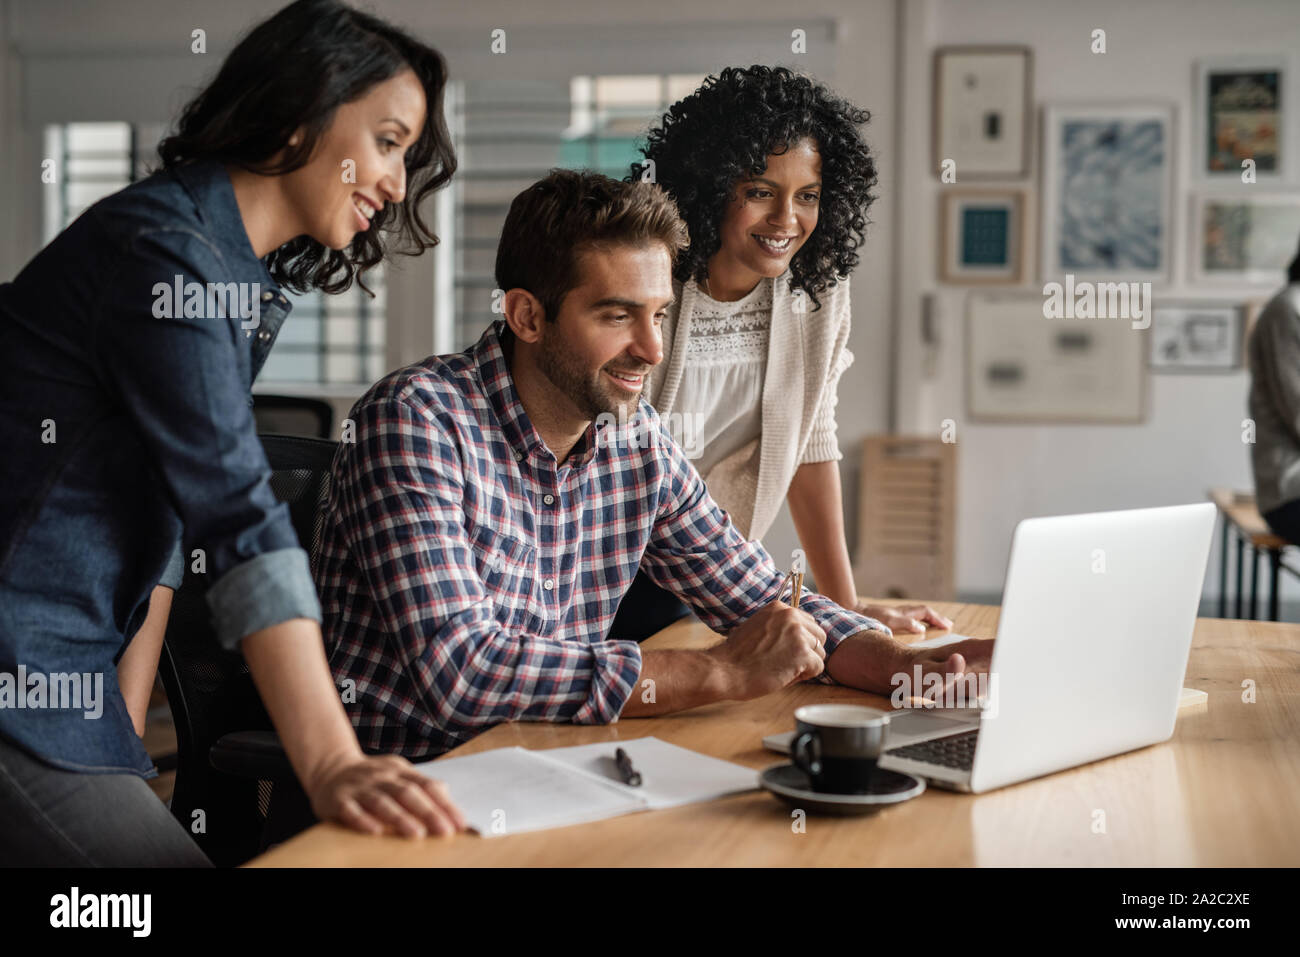 Sonriente, grupo de diseñadores que trabajan juntos en una oficina portátil Foto de stock